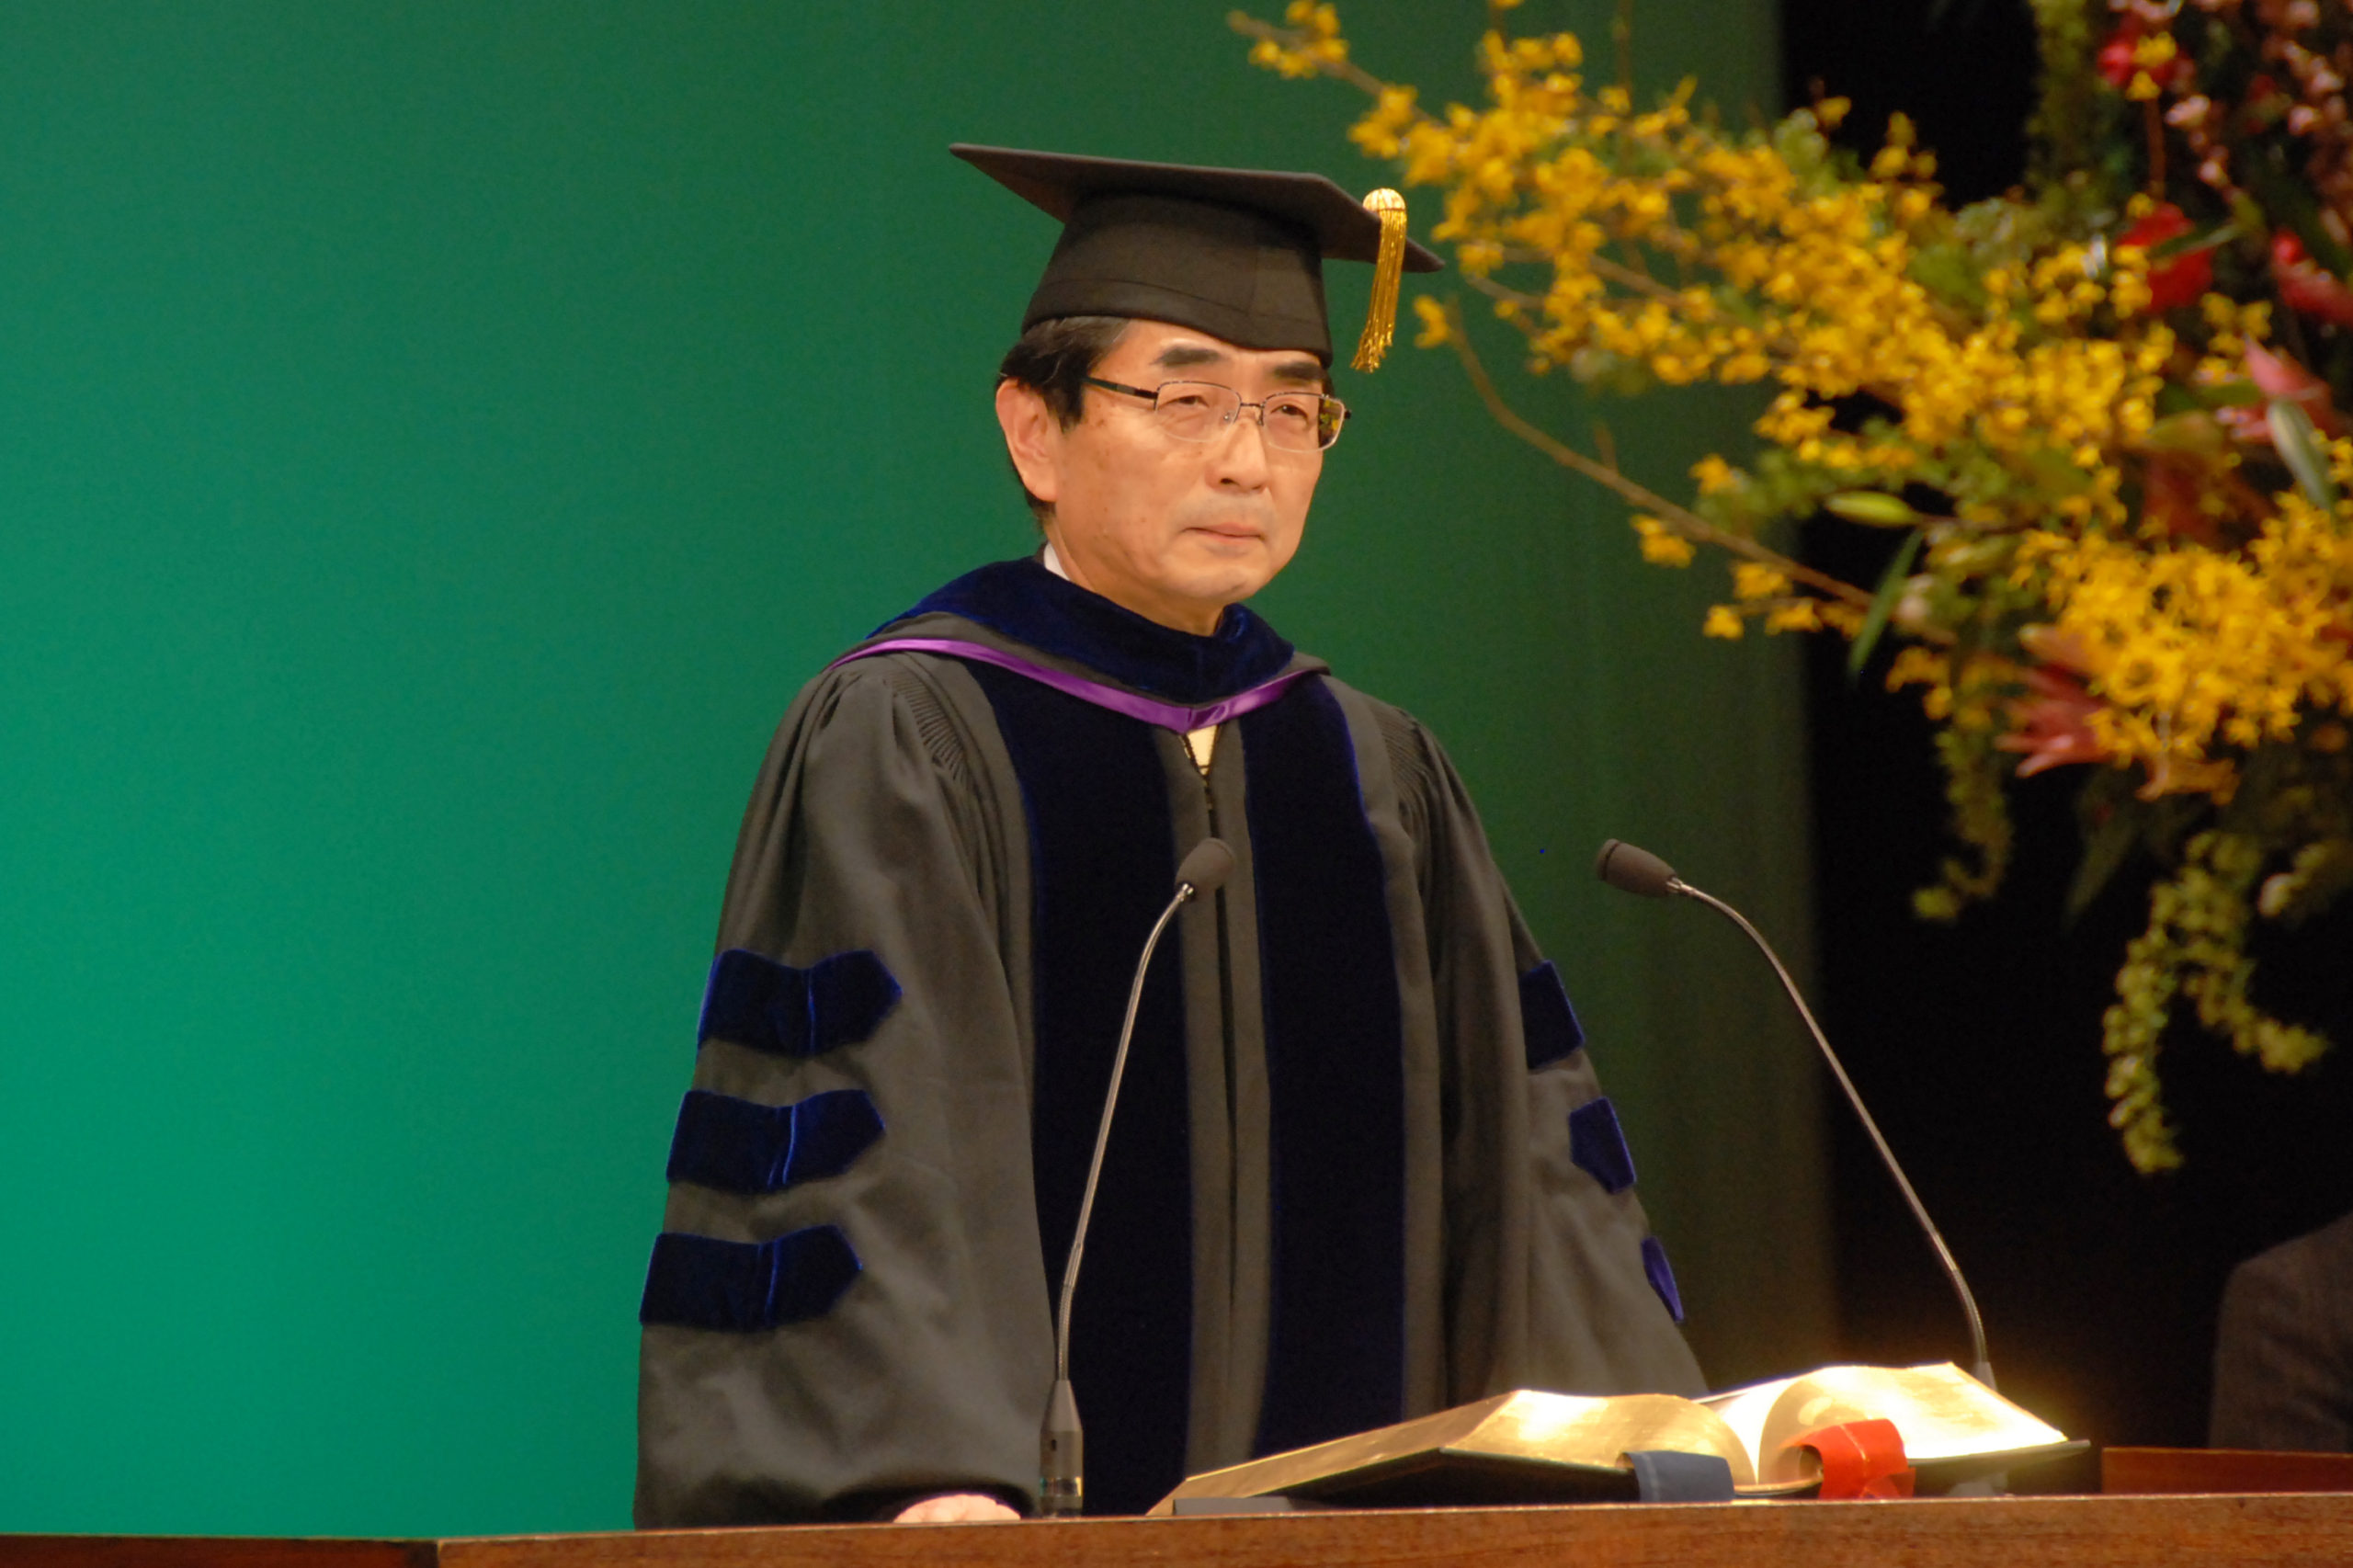 2009年度卒業式での鈴木佳秀学長の式辞